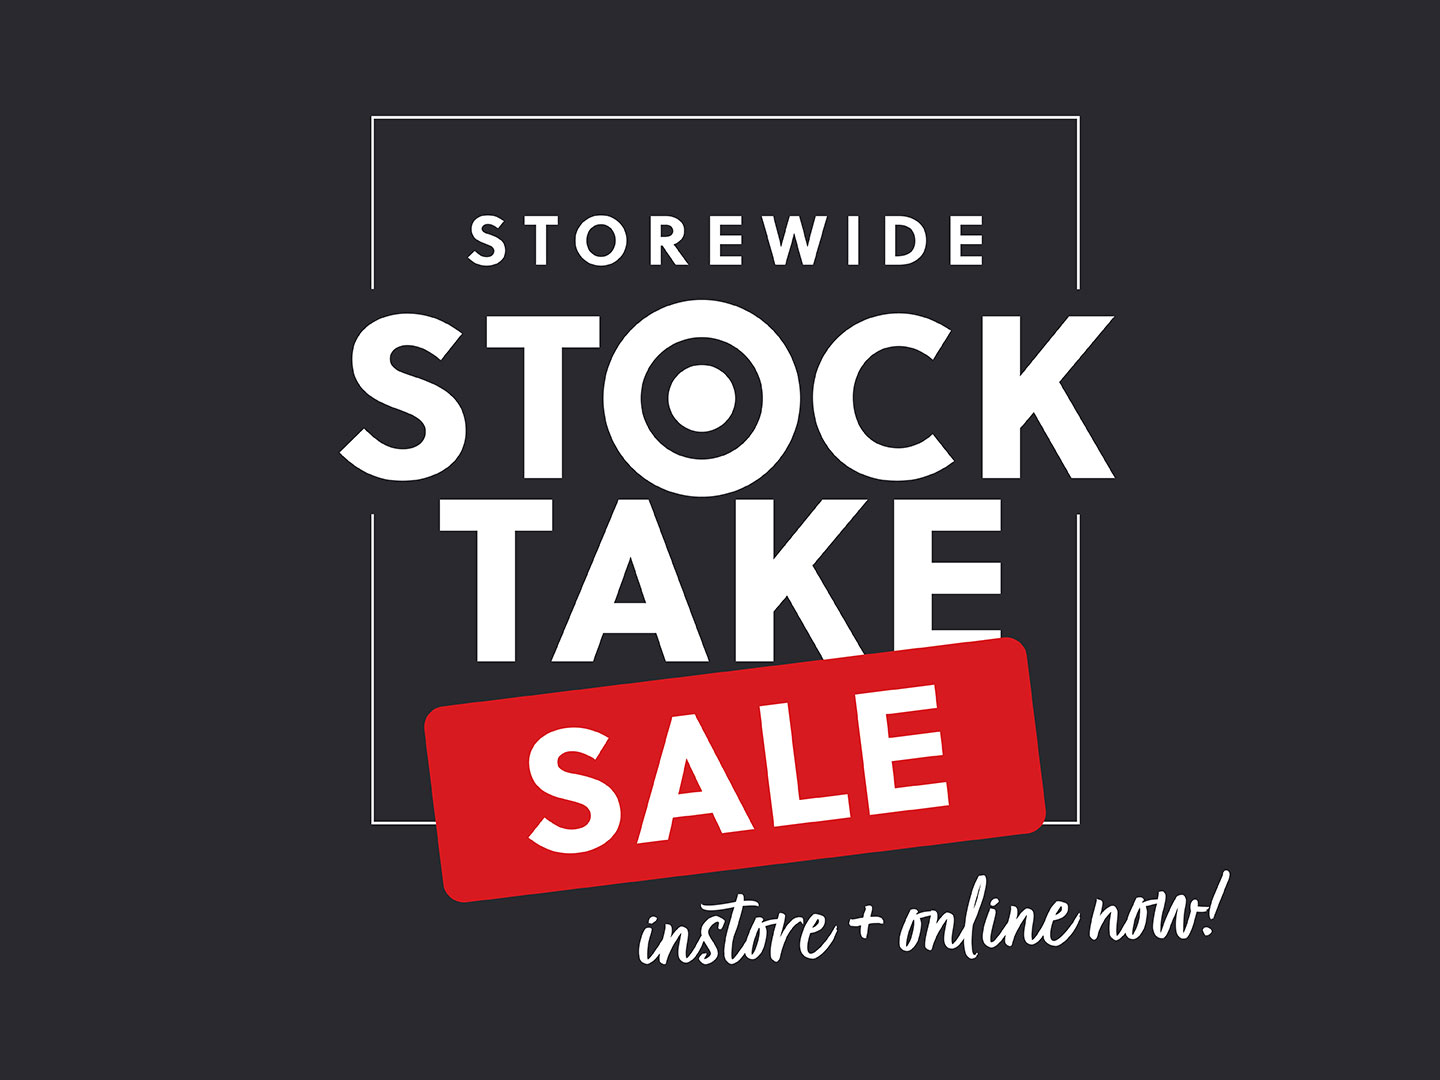 Storewide sale